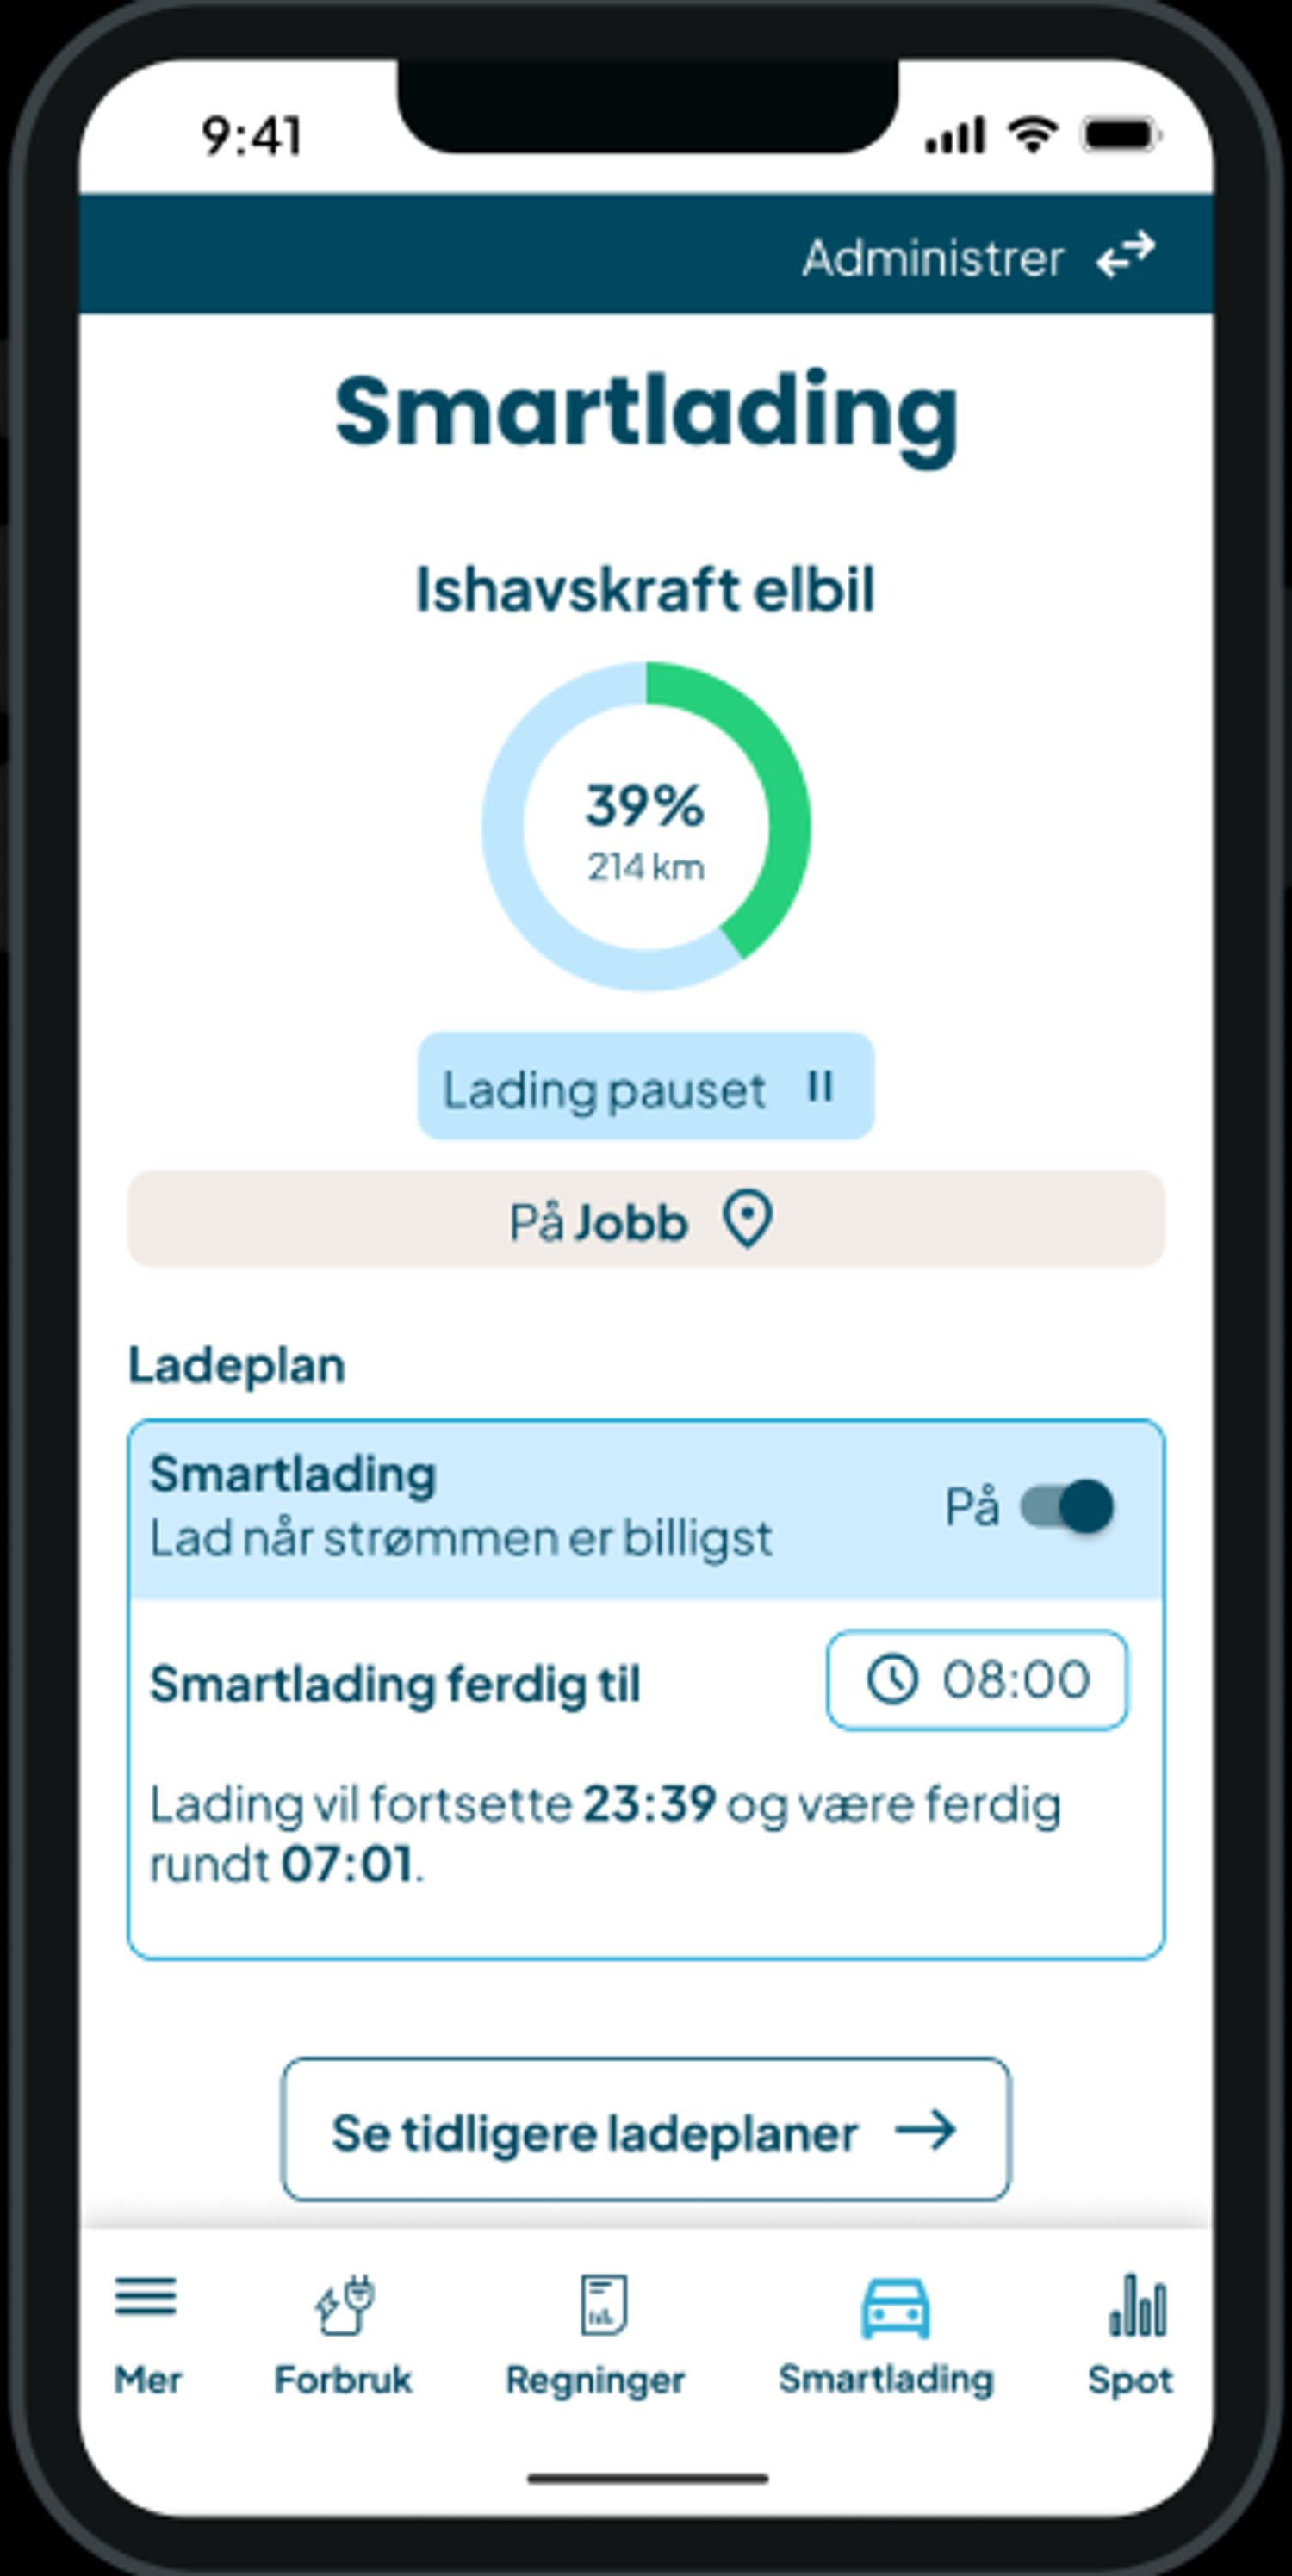 Skjermbilder av smartlading i Ishavskrafts app.